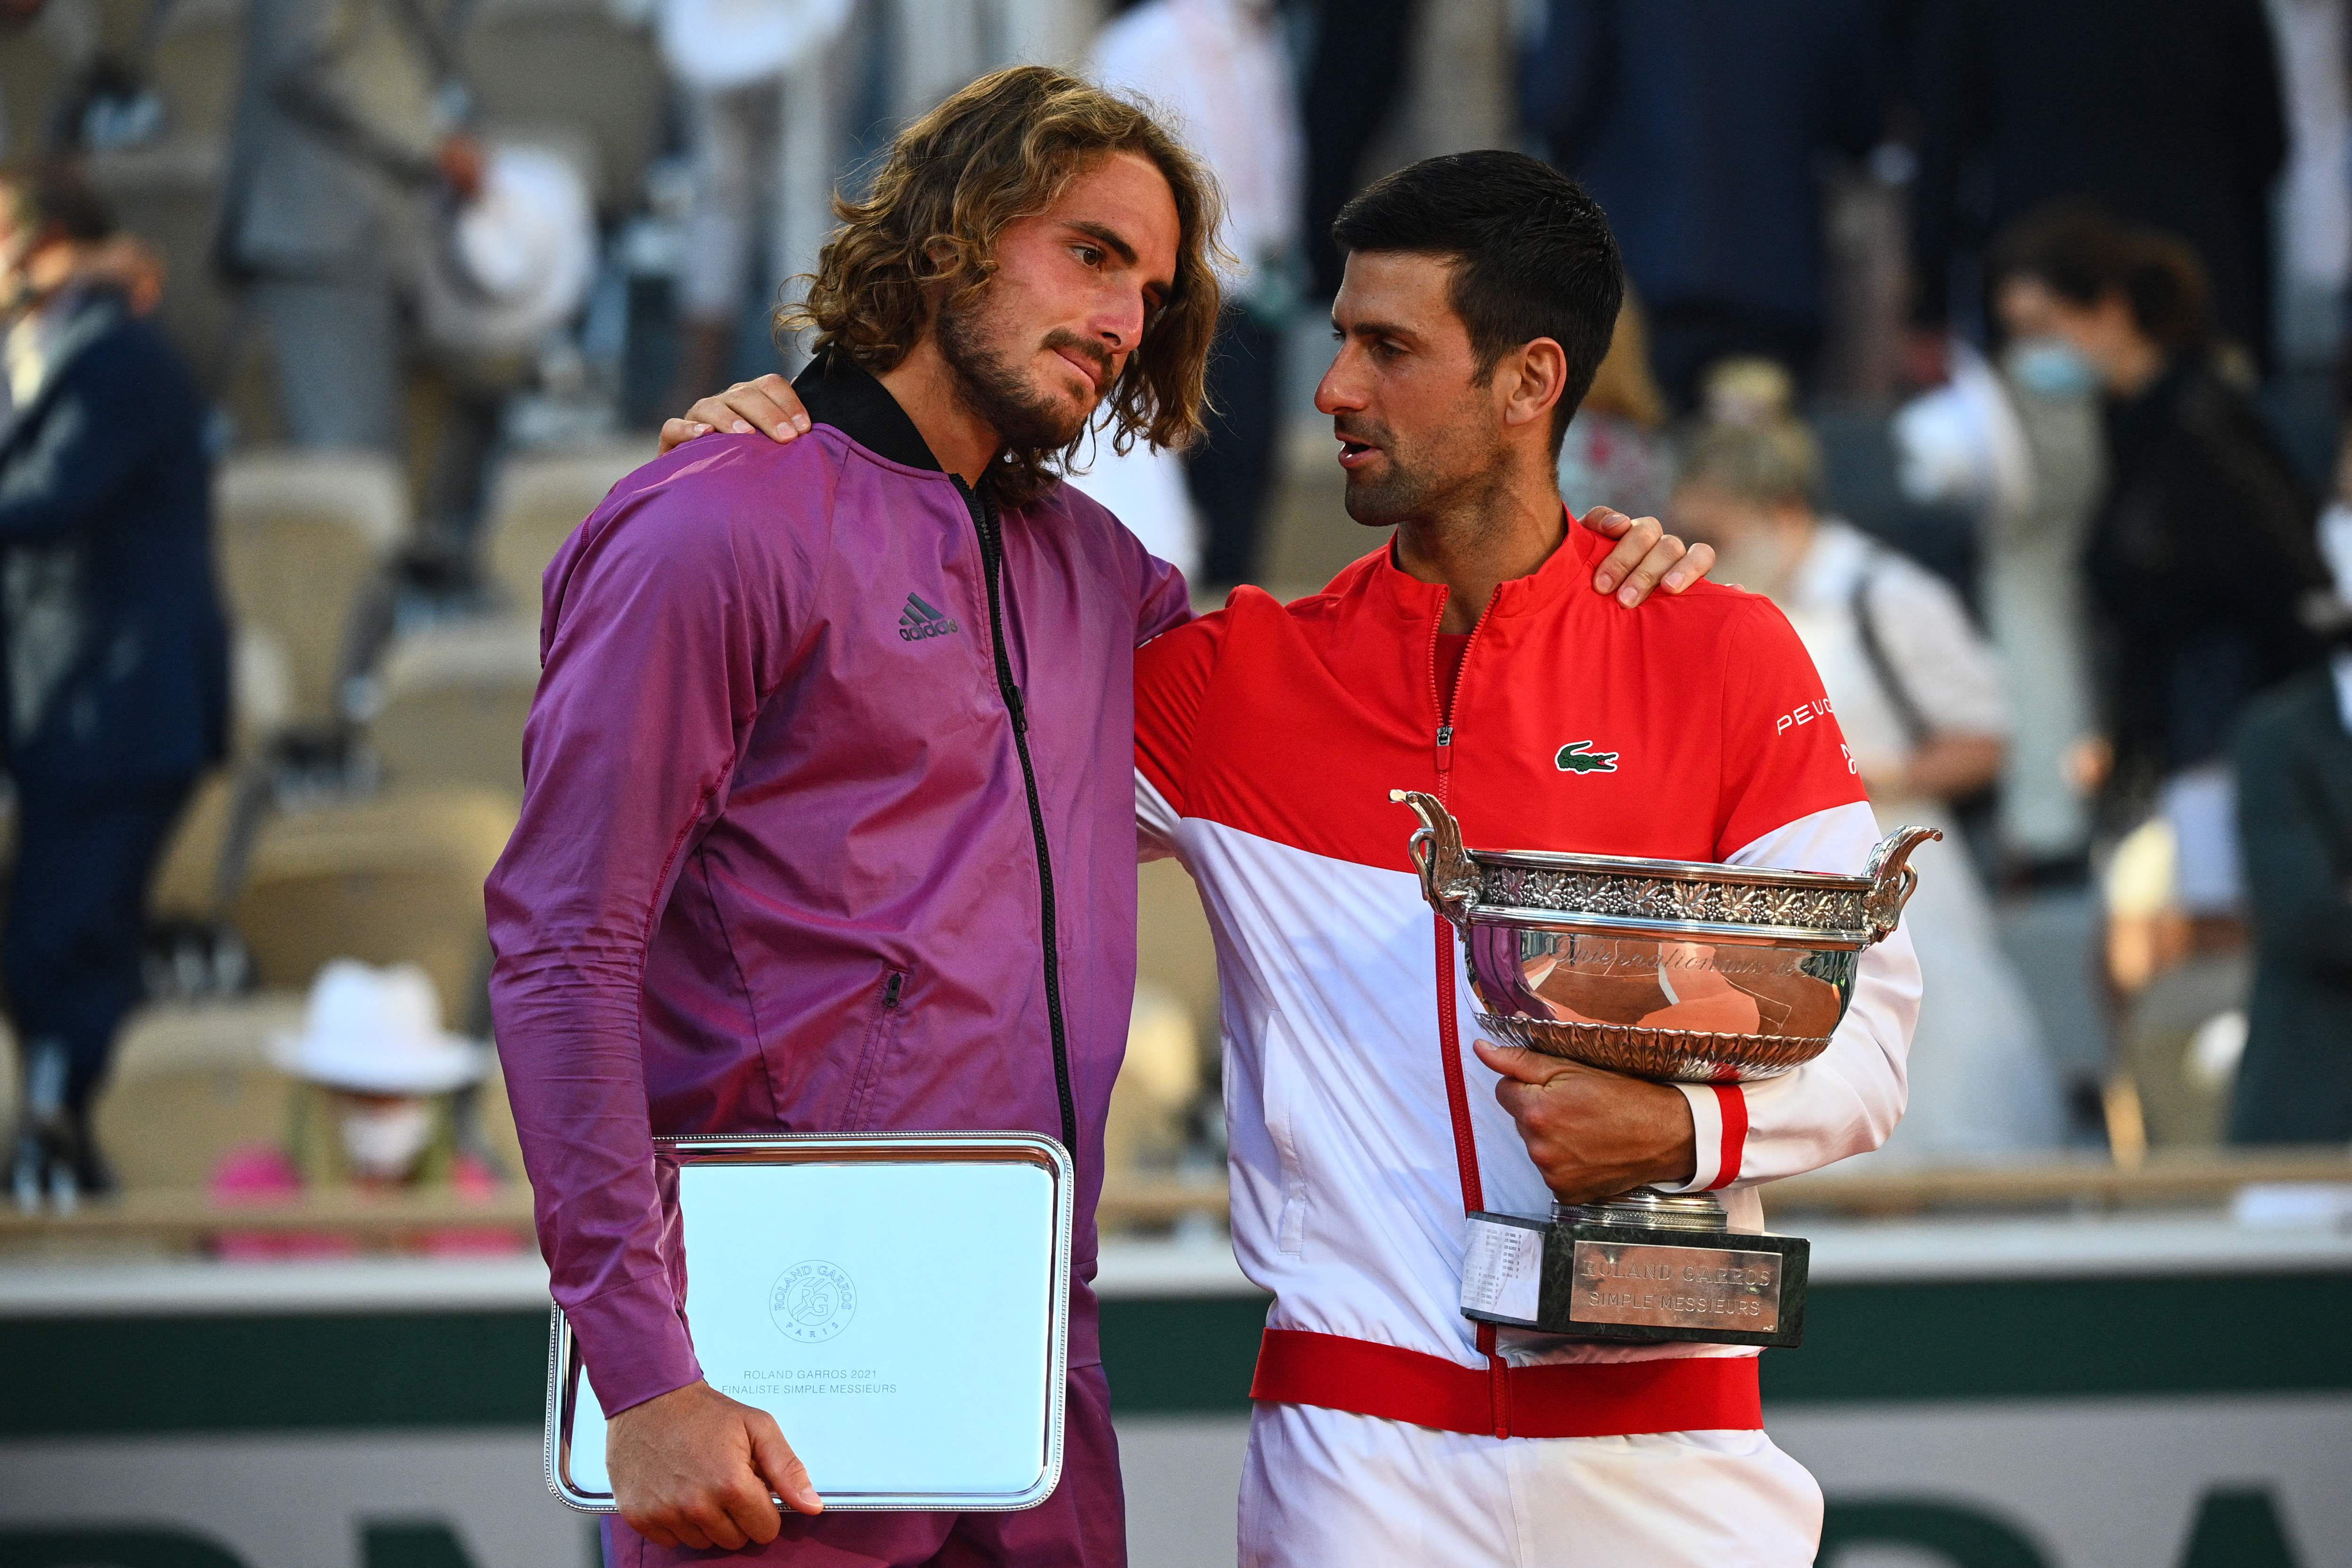 El serbio Novak Djokovic (D) le ganó al griego Stefanos Tsitsipas (I) el Roland Garros 2021. Foto Prensa Libre: AFP.